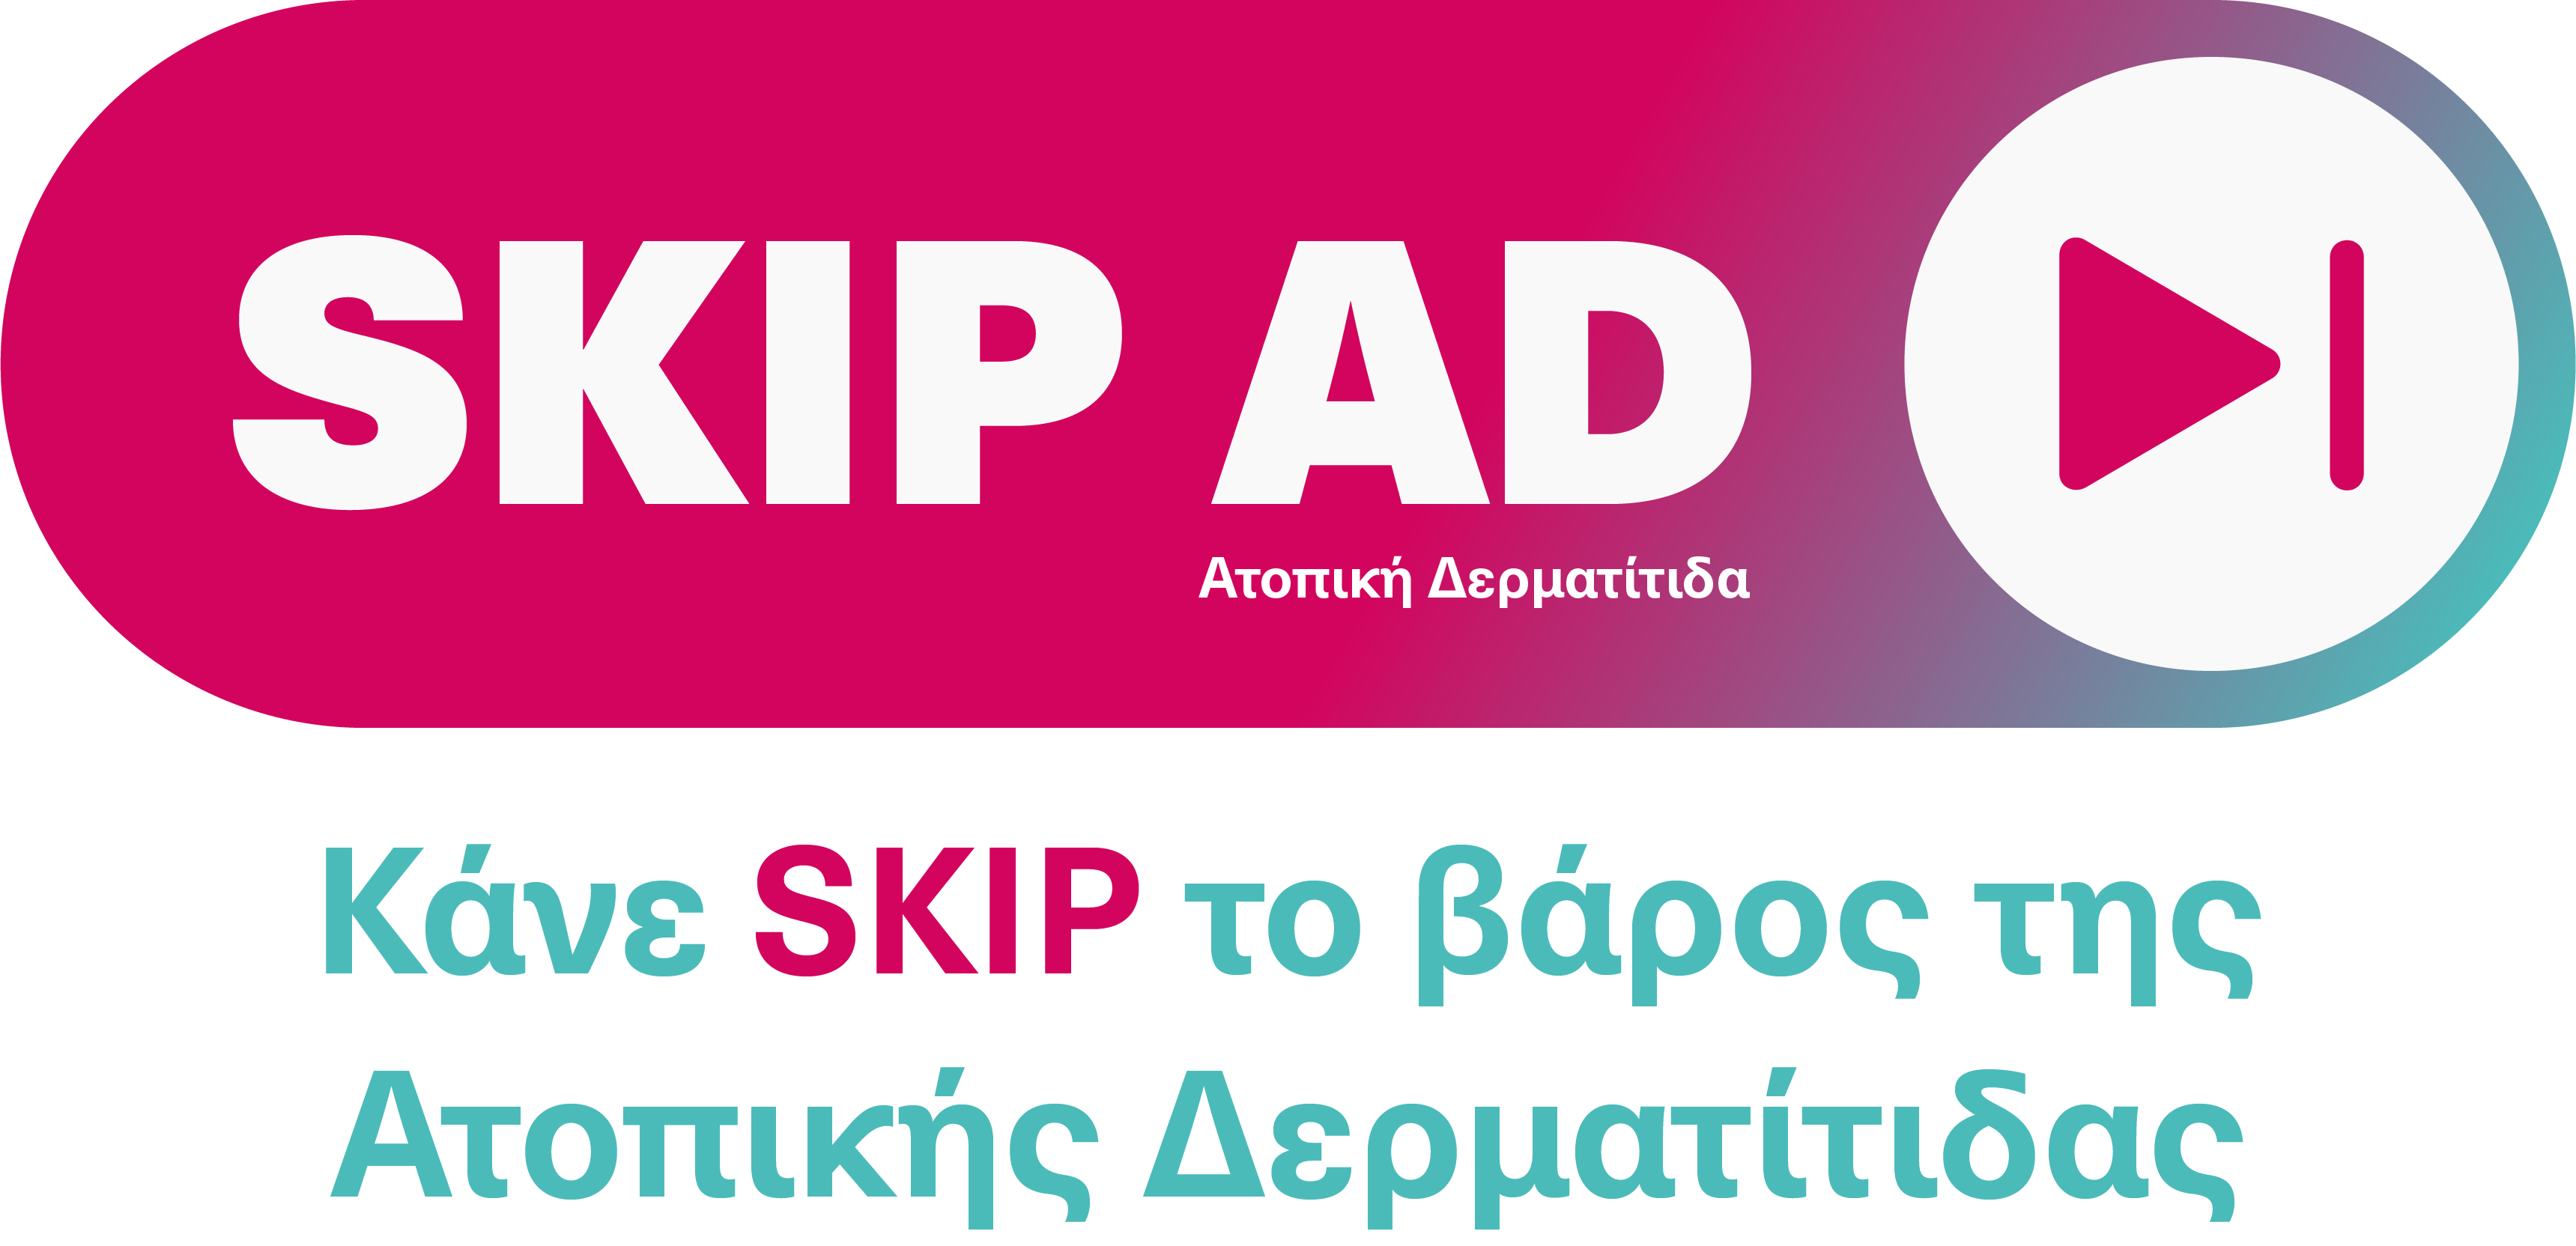 Εκστρατεία ενεργοποίησης: Κάνε… SKIP το βάρος της Ατοπικής Δερματίτιδας – Προσβάλλει περίπου το 20% των παιδιών και το 5 έως 10% των ενηλίκων